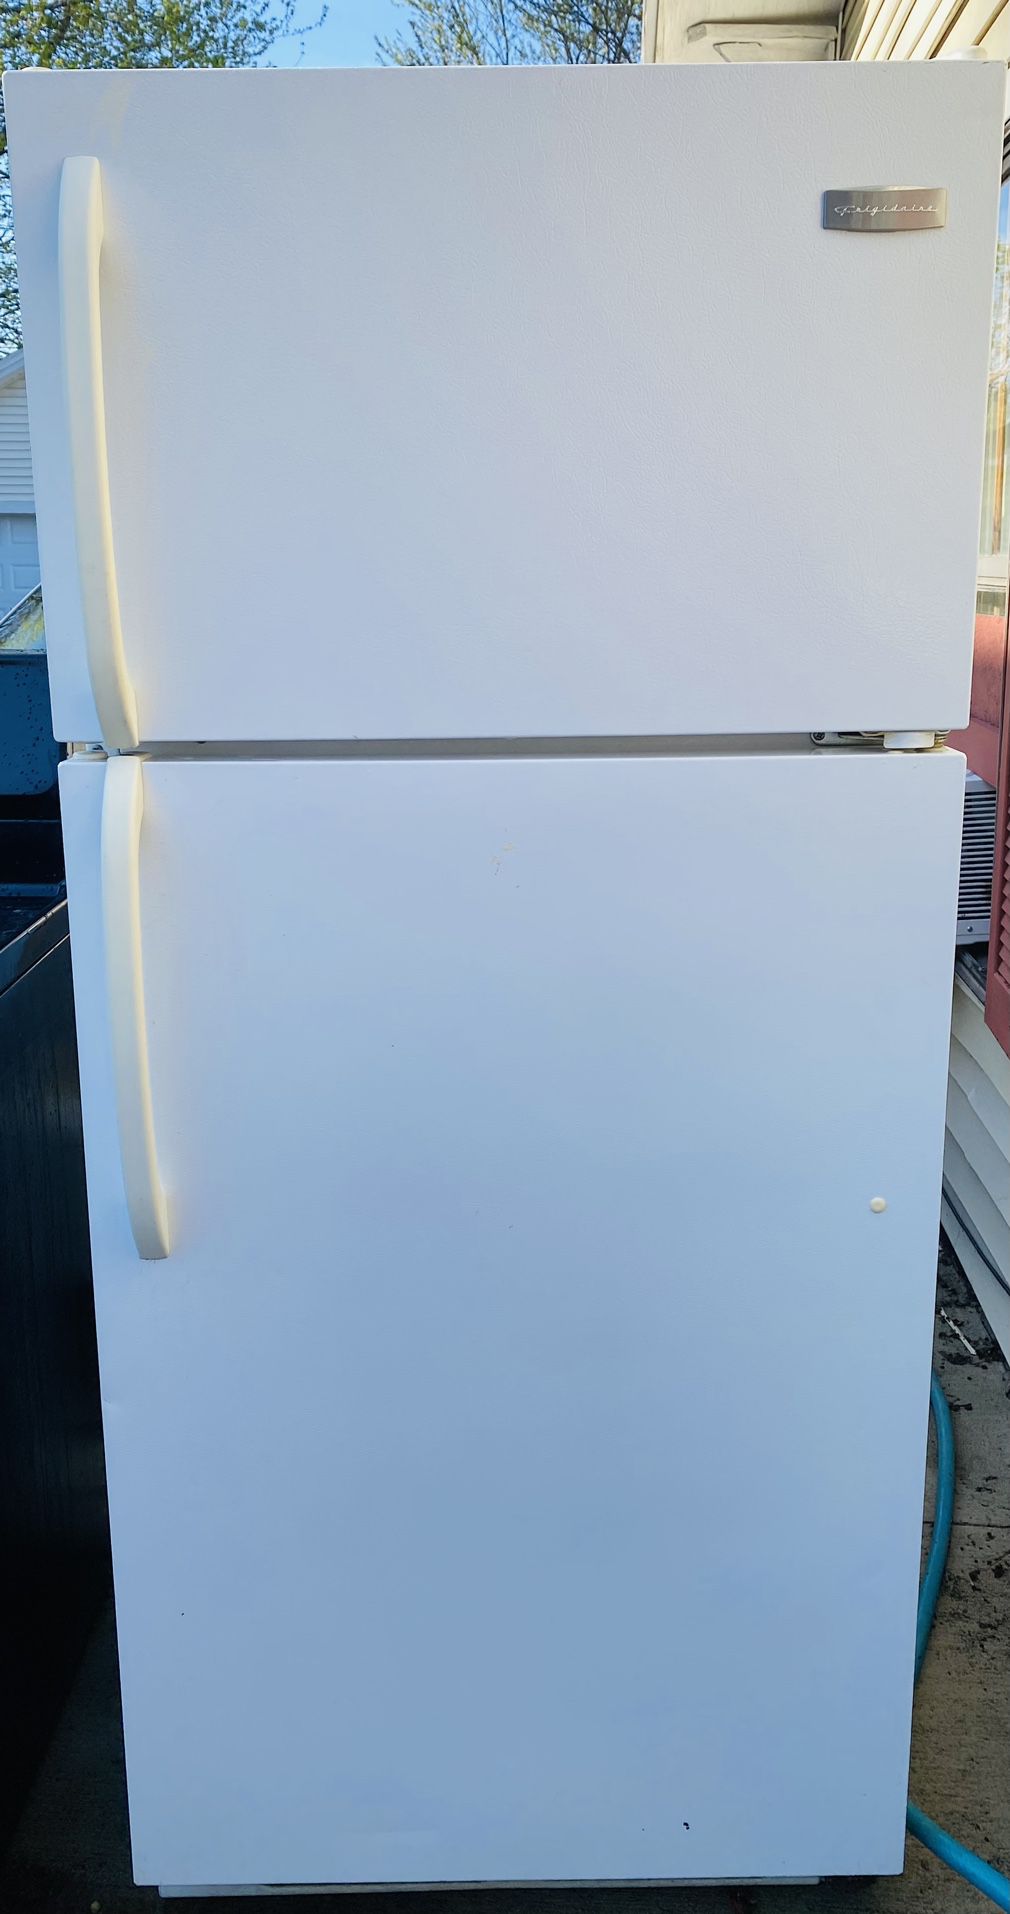 Refrigerator - Freezer (Brand: Frigidaire)